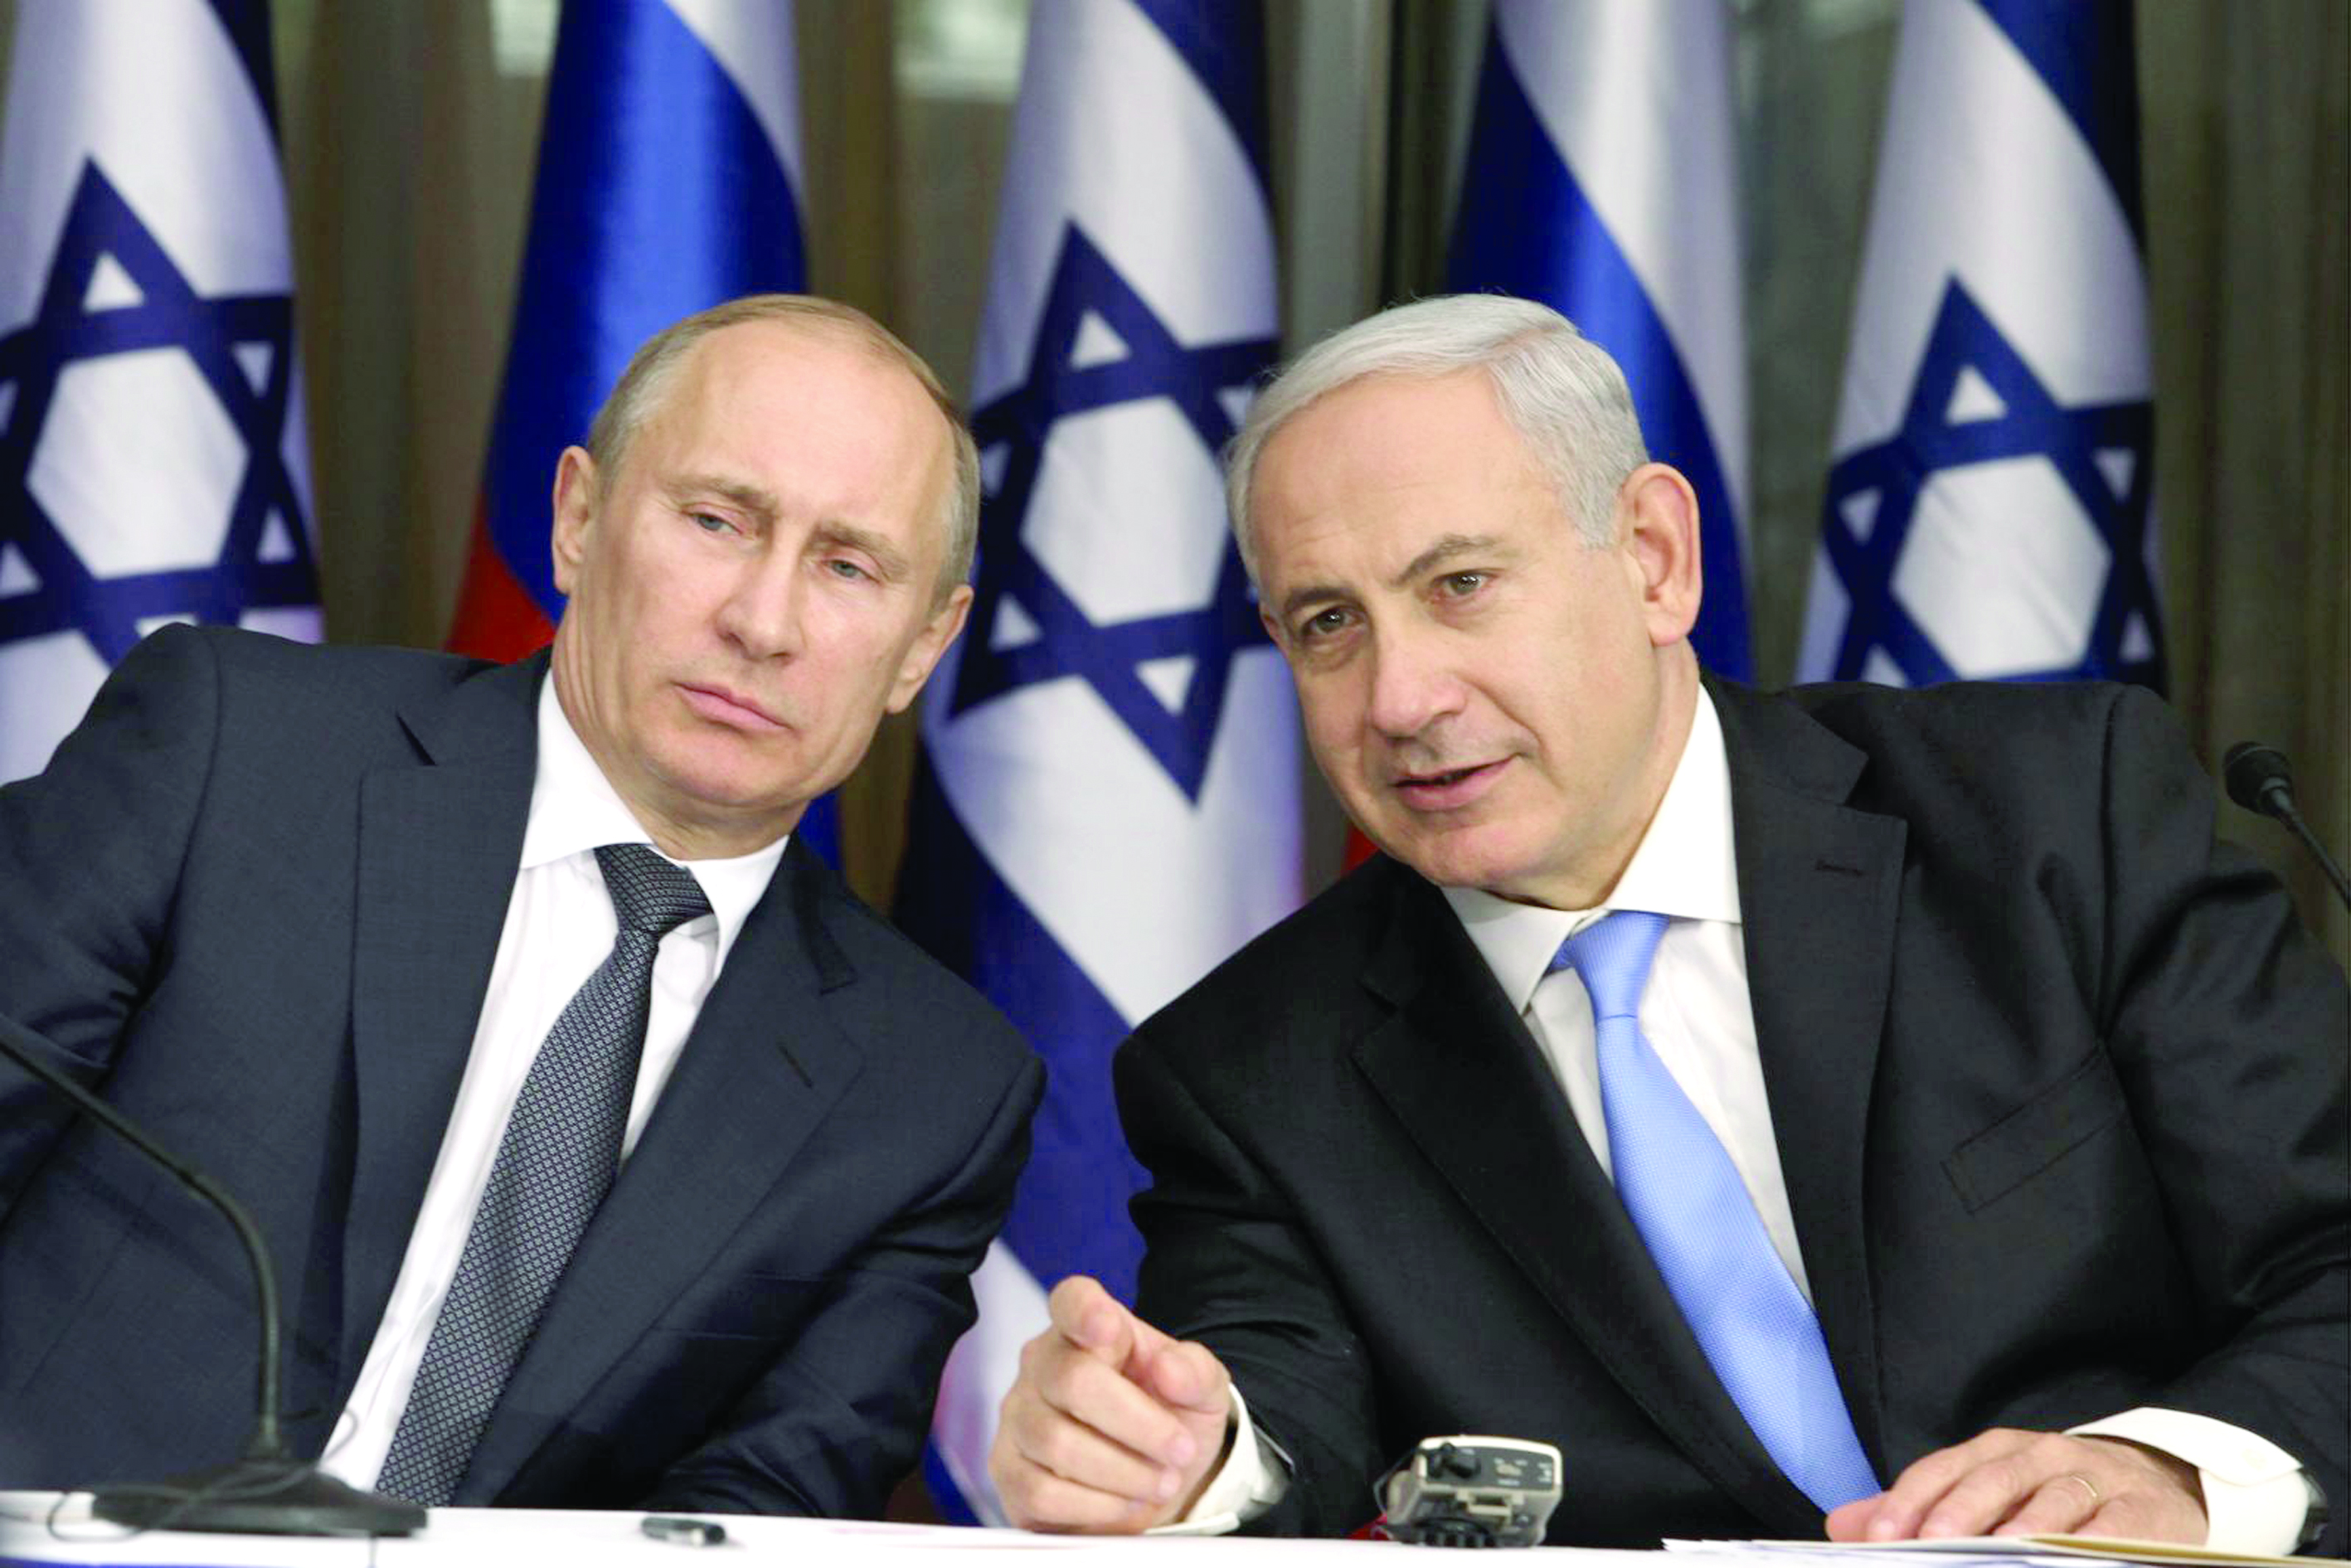 نتنياهو سيطالب بوتين برسم حدود سوريا وفق مصالح إسرائيل